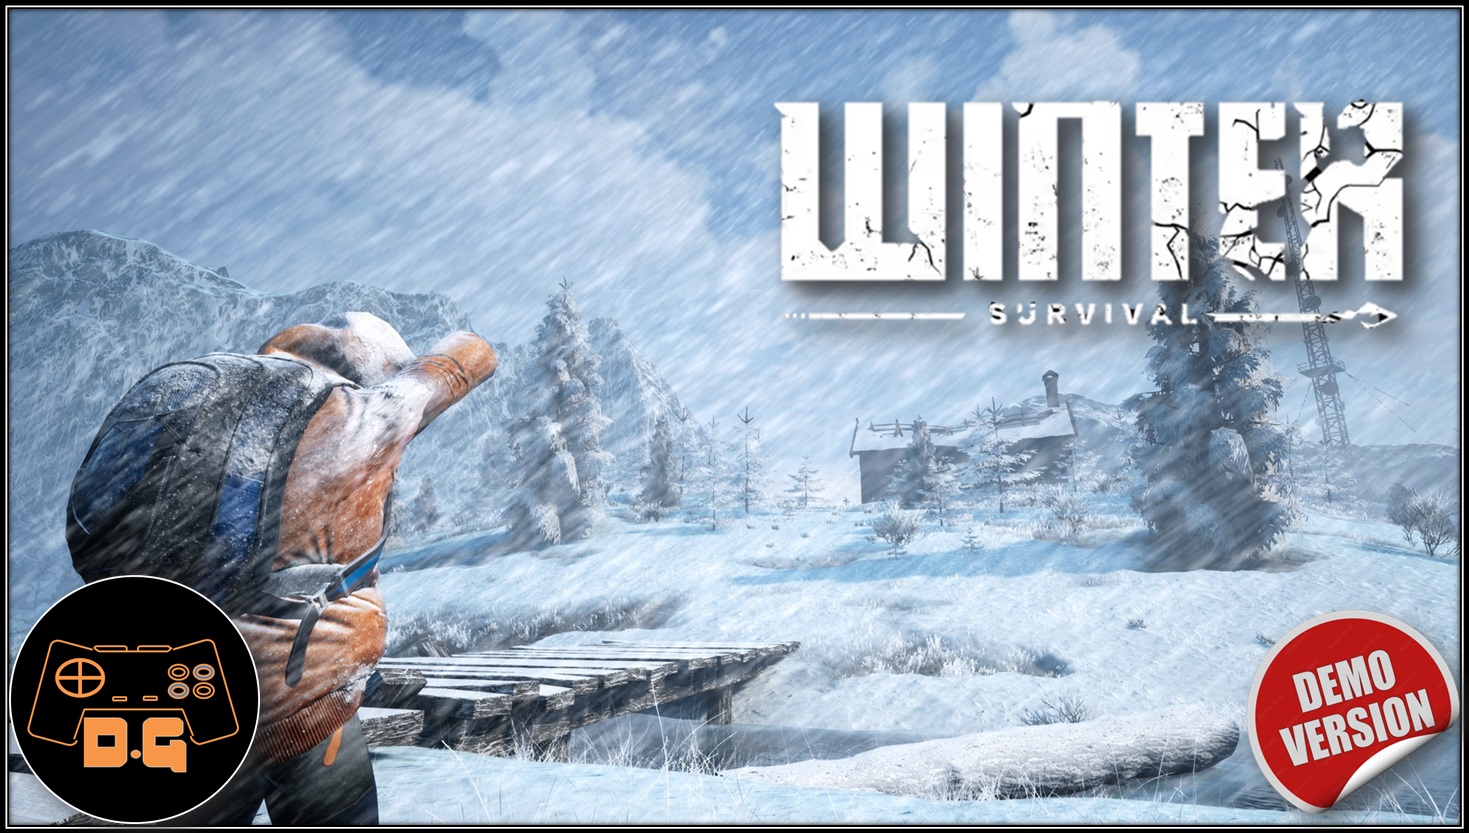 ◈ Winter Survival Demo ◈ НЕ УМРИ ◈